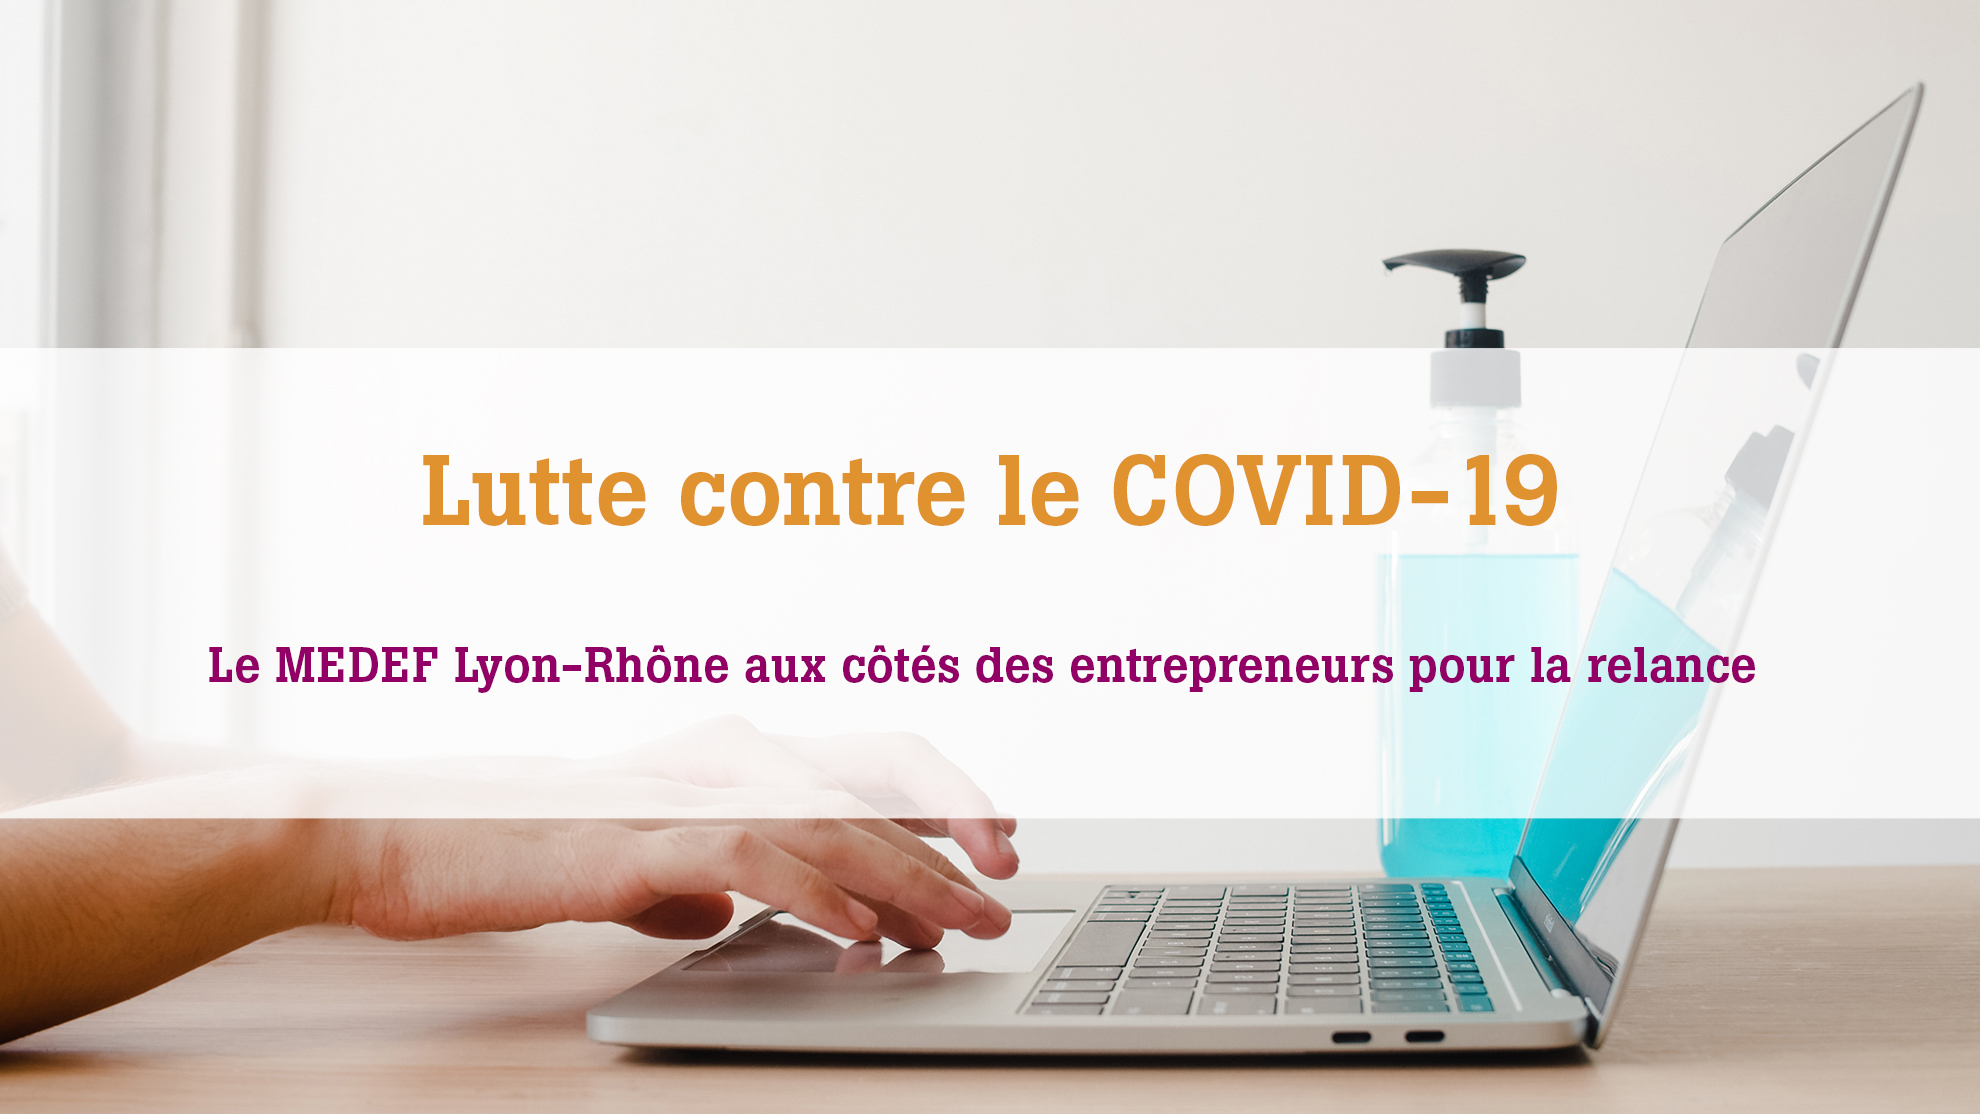 Le MEDEF Lyoin-Rhône accompagne les entrepreneurs du territoire avec les dernières informations utiles pour faire face au COVID-19 en entreprise